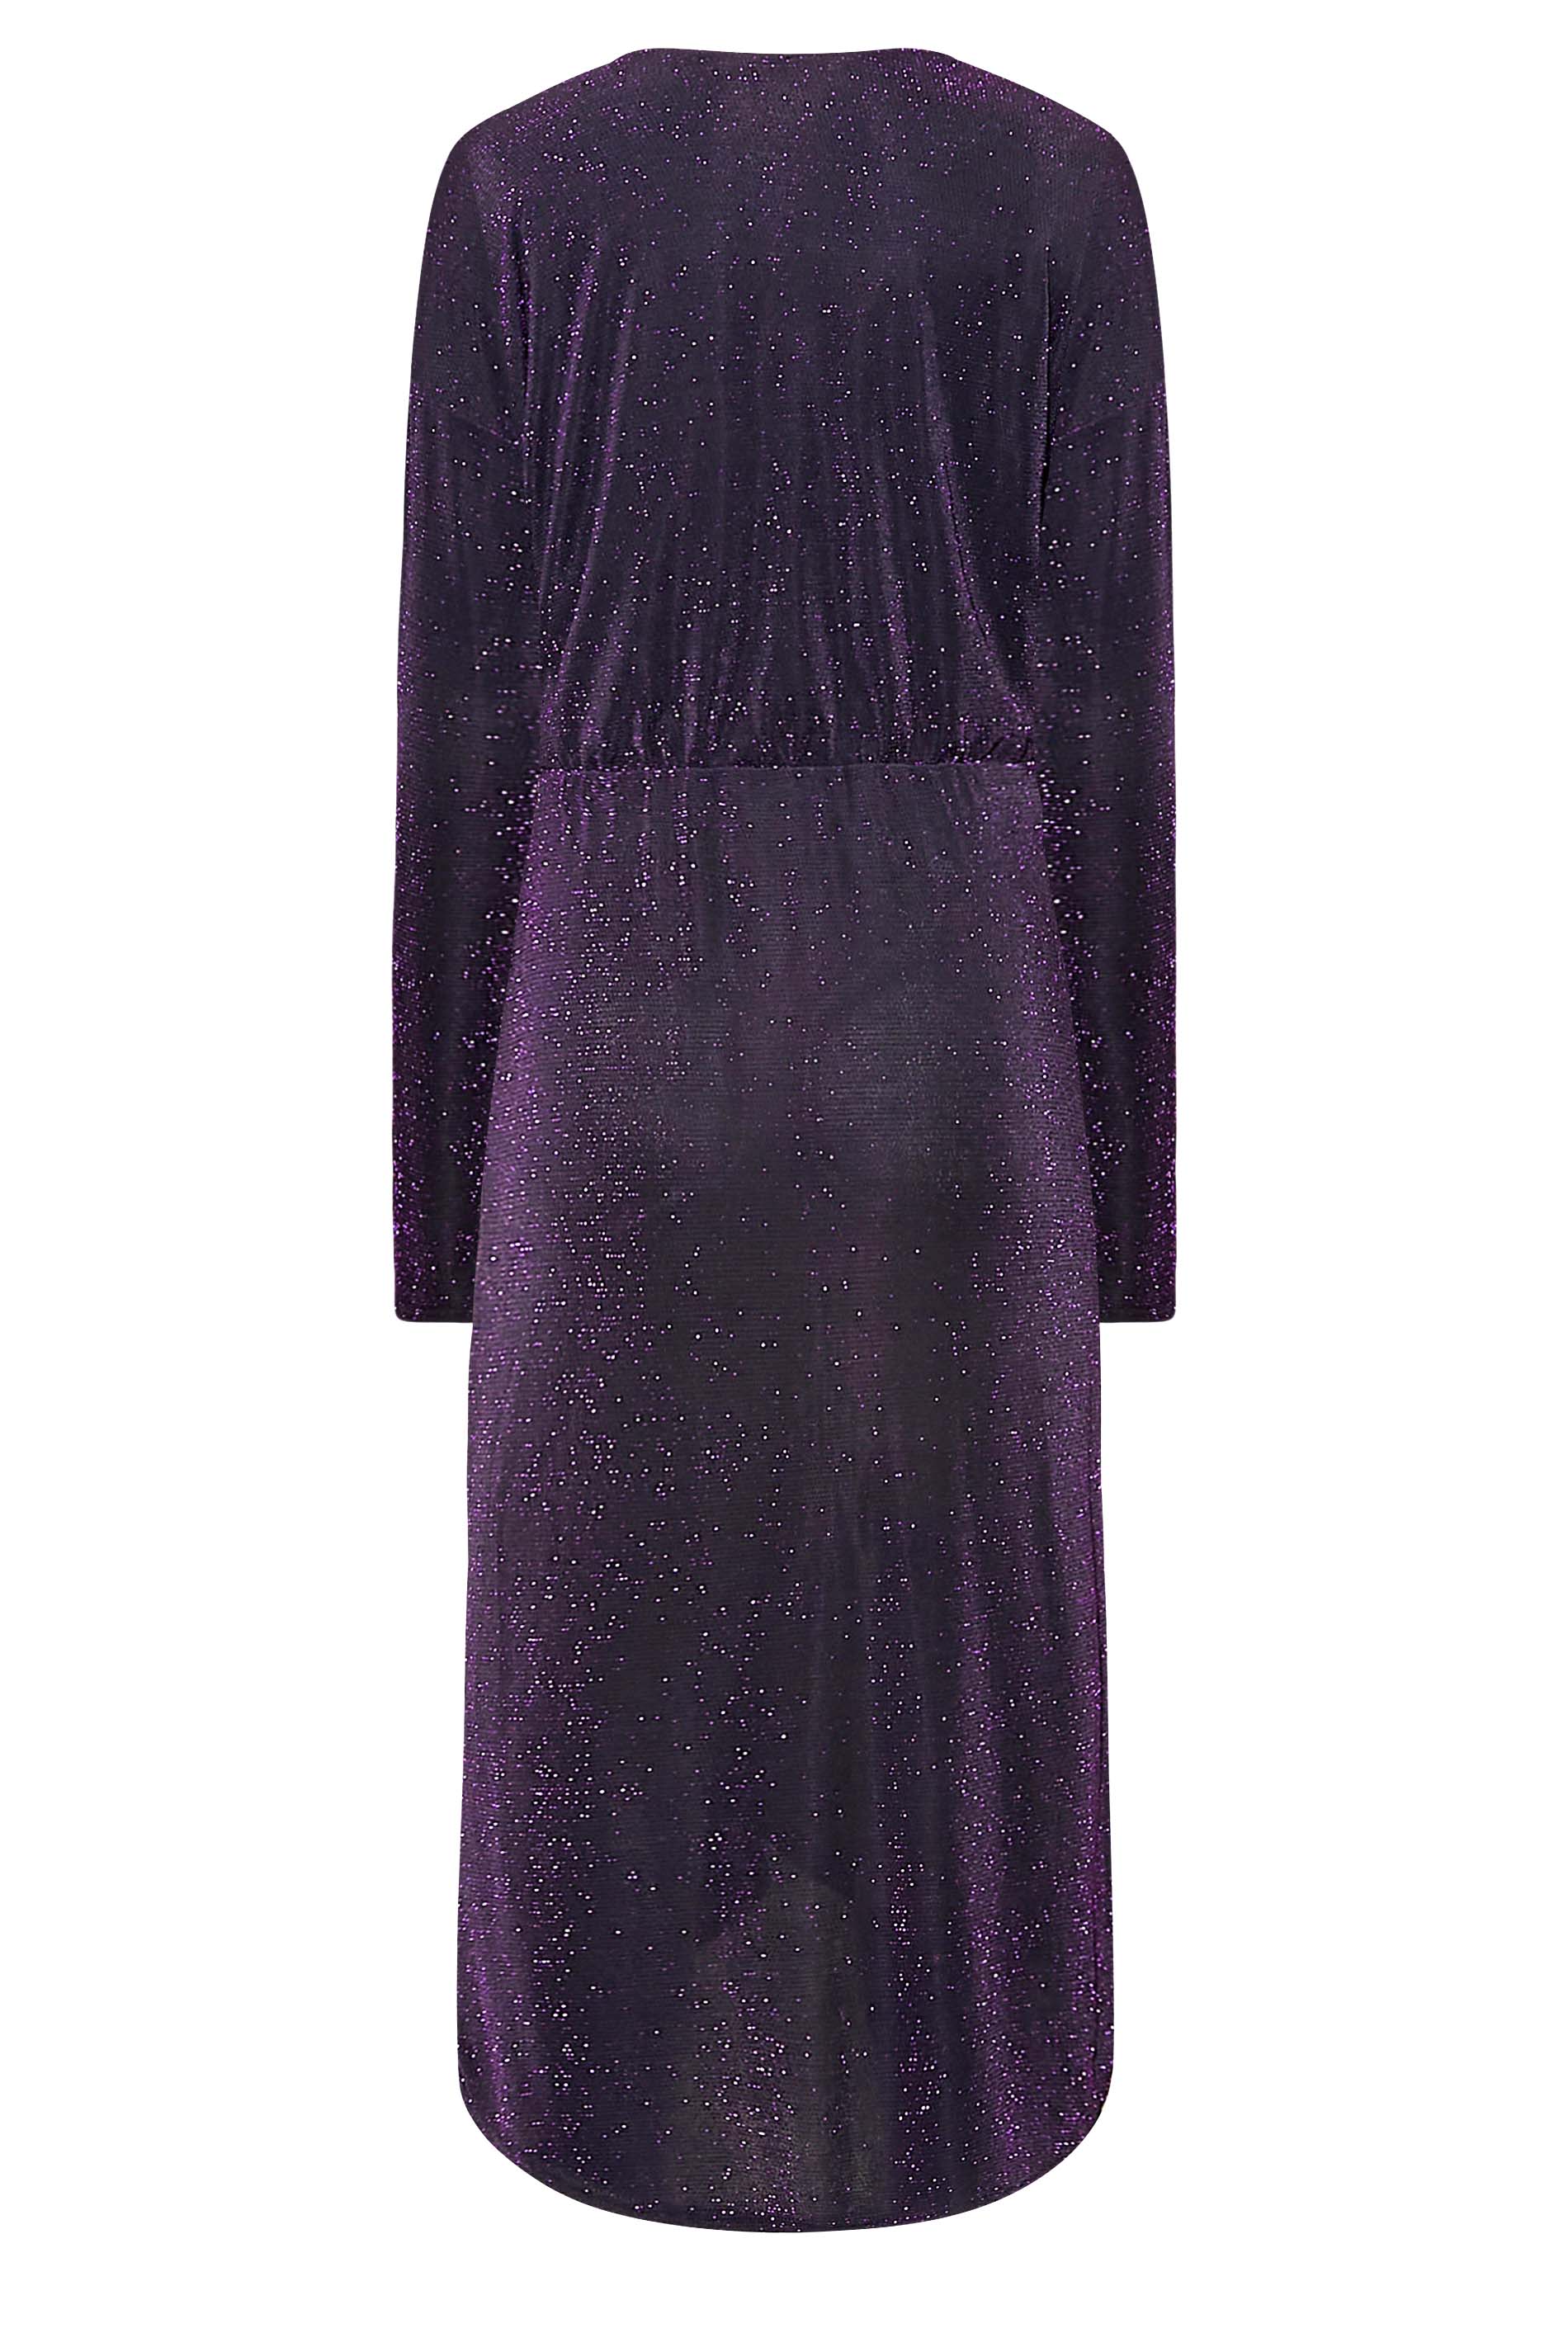 LTS Tall Women's Black & Purple Glitter Twist Wrap Midi Dress | Long Tall Sally 3